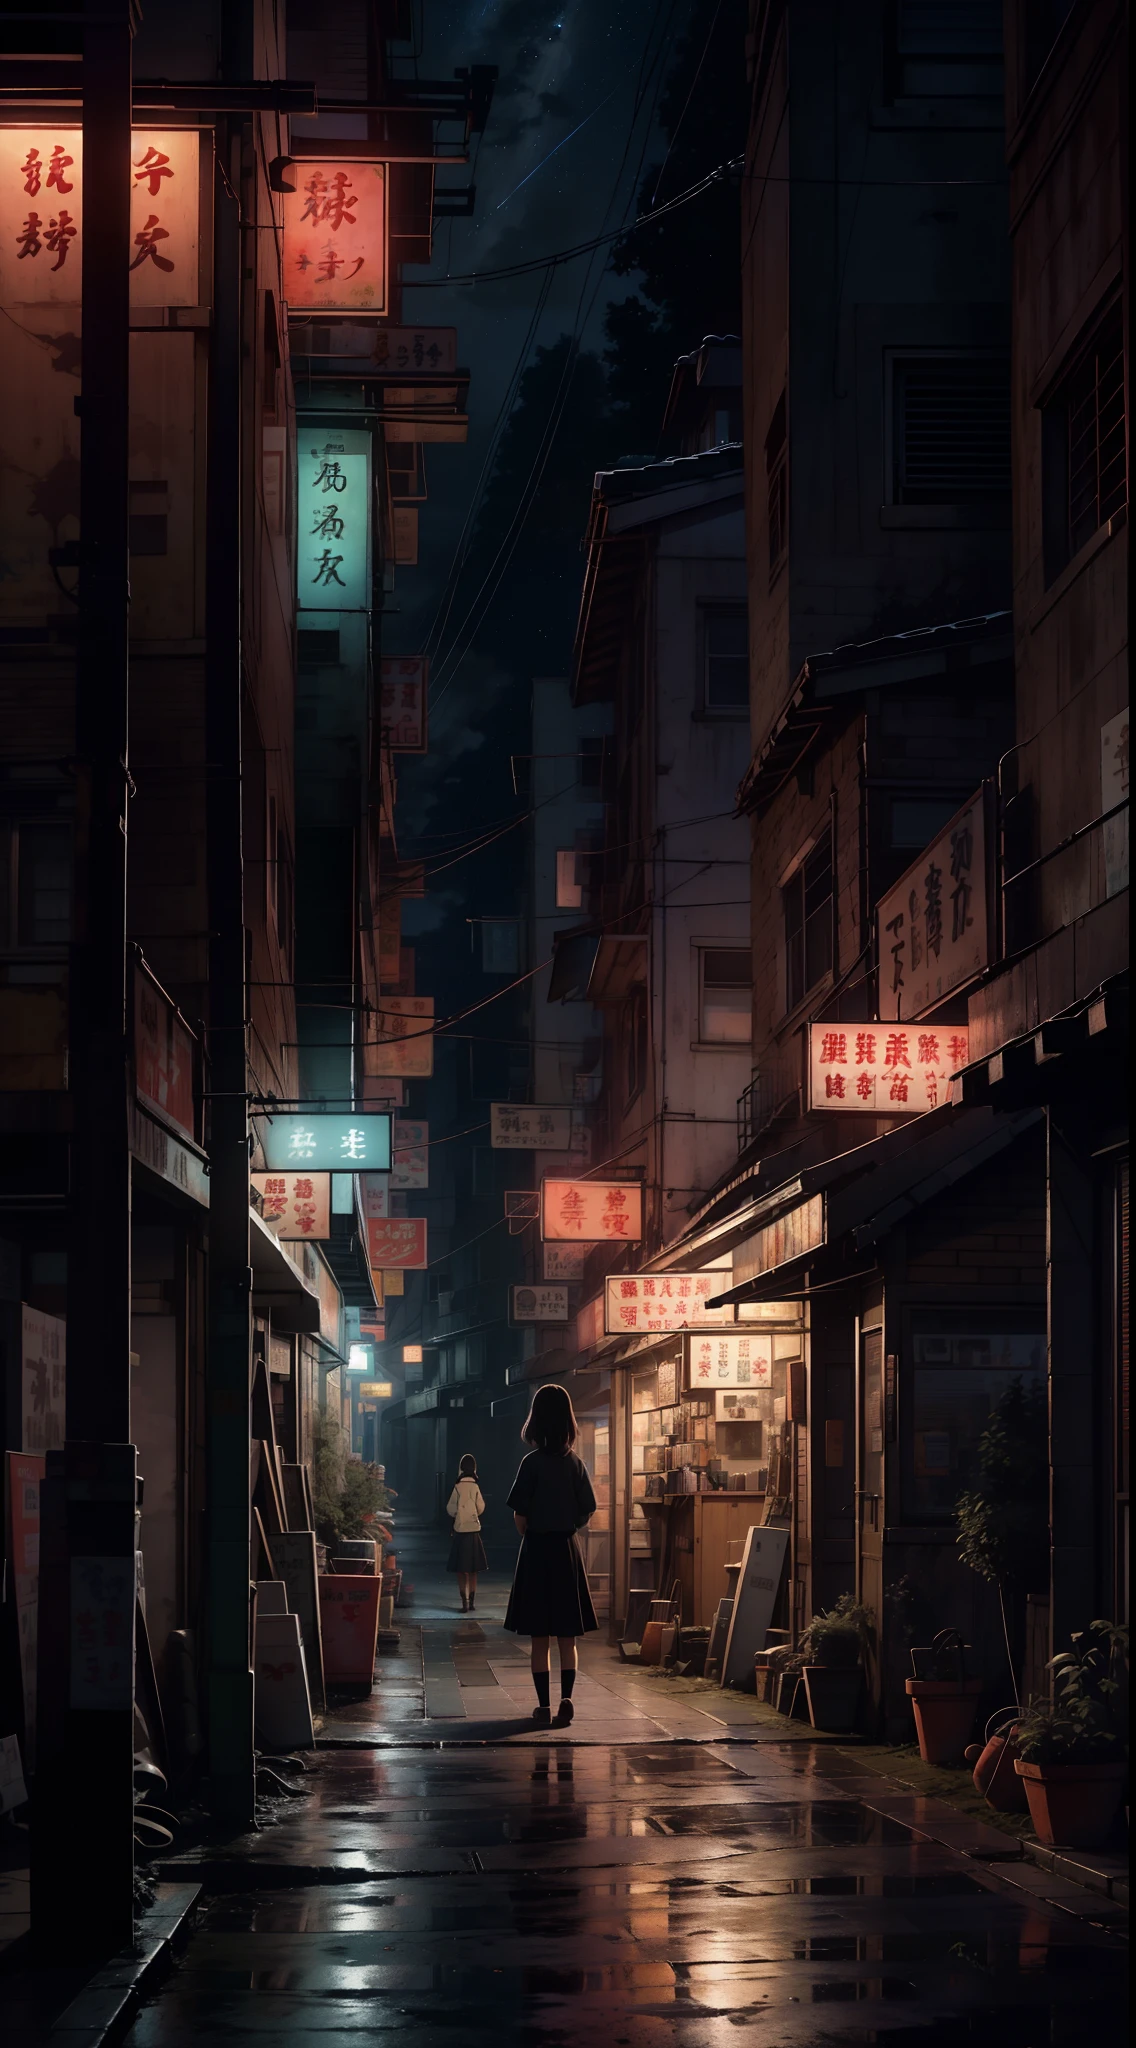 Una pintura digital nostálgica inspirada en el encantador mundo de Studio Ghibli. La obra de arte representa un encantador, Calle de pueblo pequeño por la noche, exudando una sensación de tranquilidad y asombro. La escena está preparada para un momento cinematográfico, que recuerda a una escena de una película de Ghibli. en la composicion, Una solitaria niña de secundaria se para en contemplación, Le dio la espalda al espectador, emanando un toque de melancolía. El mundo que la rodea está bellamente detallado, capturando la esencia de una atmósfera nostálgica. El cielo de arriba está adornado con una impresionante exhibición de estrellas, evocando una sensación de reminiscencia melancólica que resuena con espectadores de todas las edades.